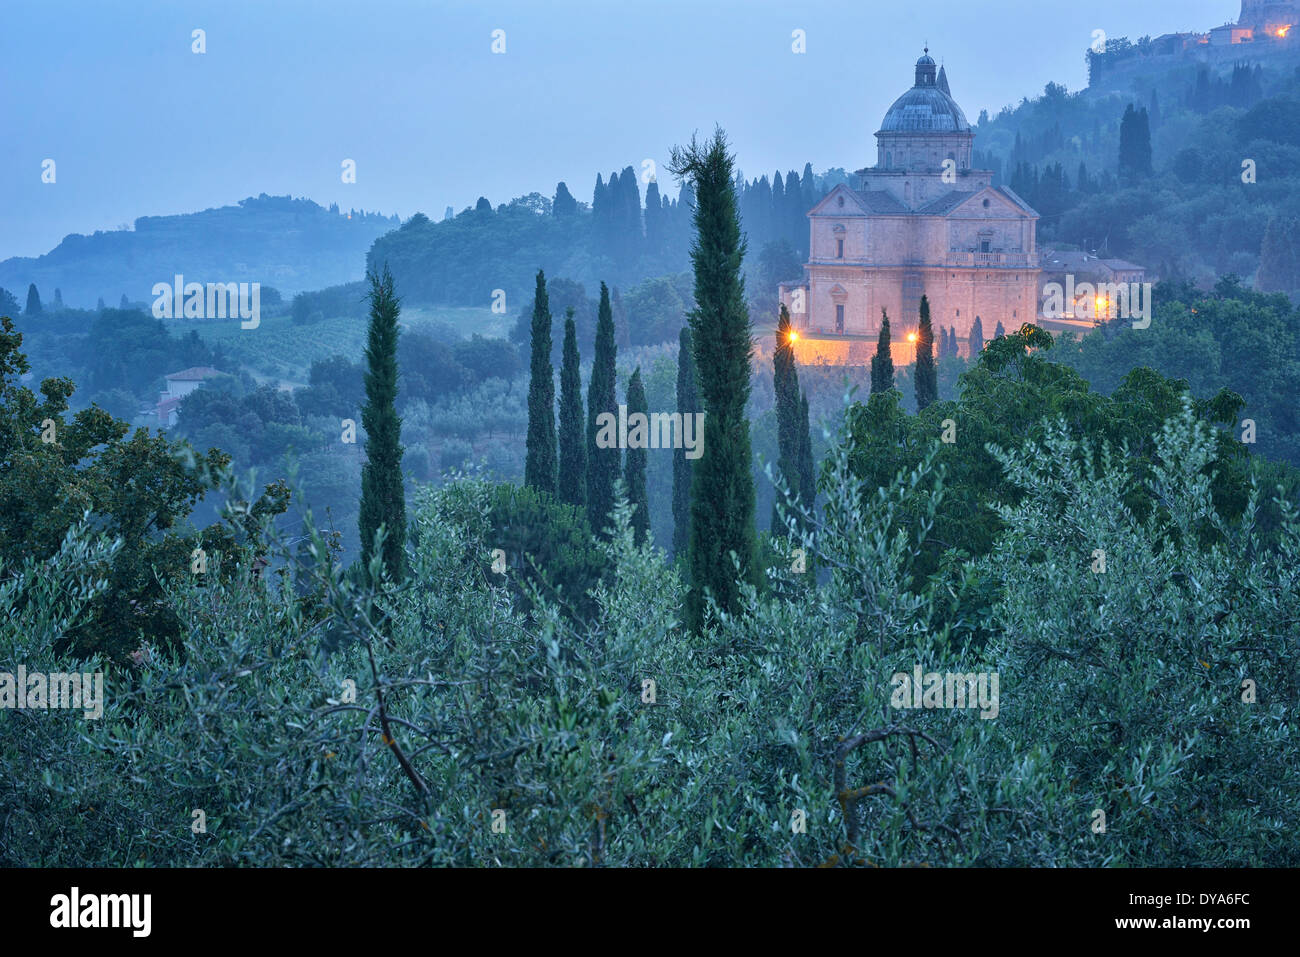 Europa Mediterraneo italiano italia Toscana provincia di Siena San Biagio Montepulciano chiesa di architettura del paesaggio alba misty Foto Stock